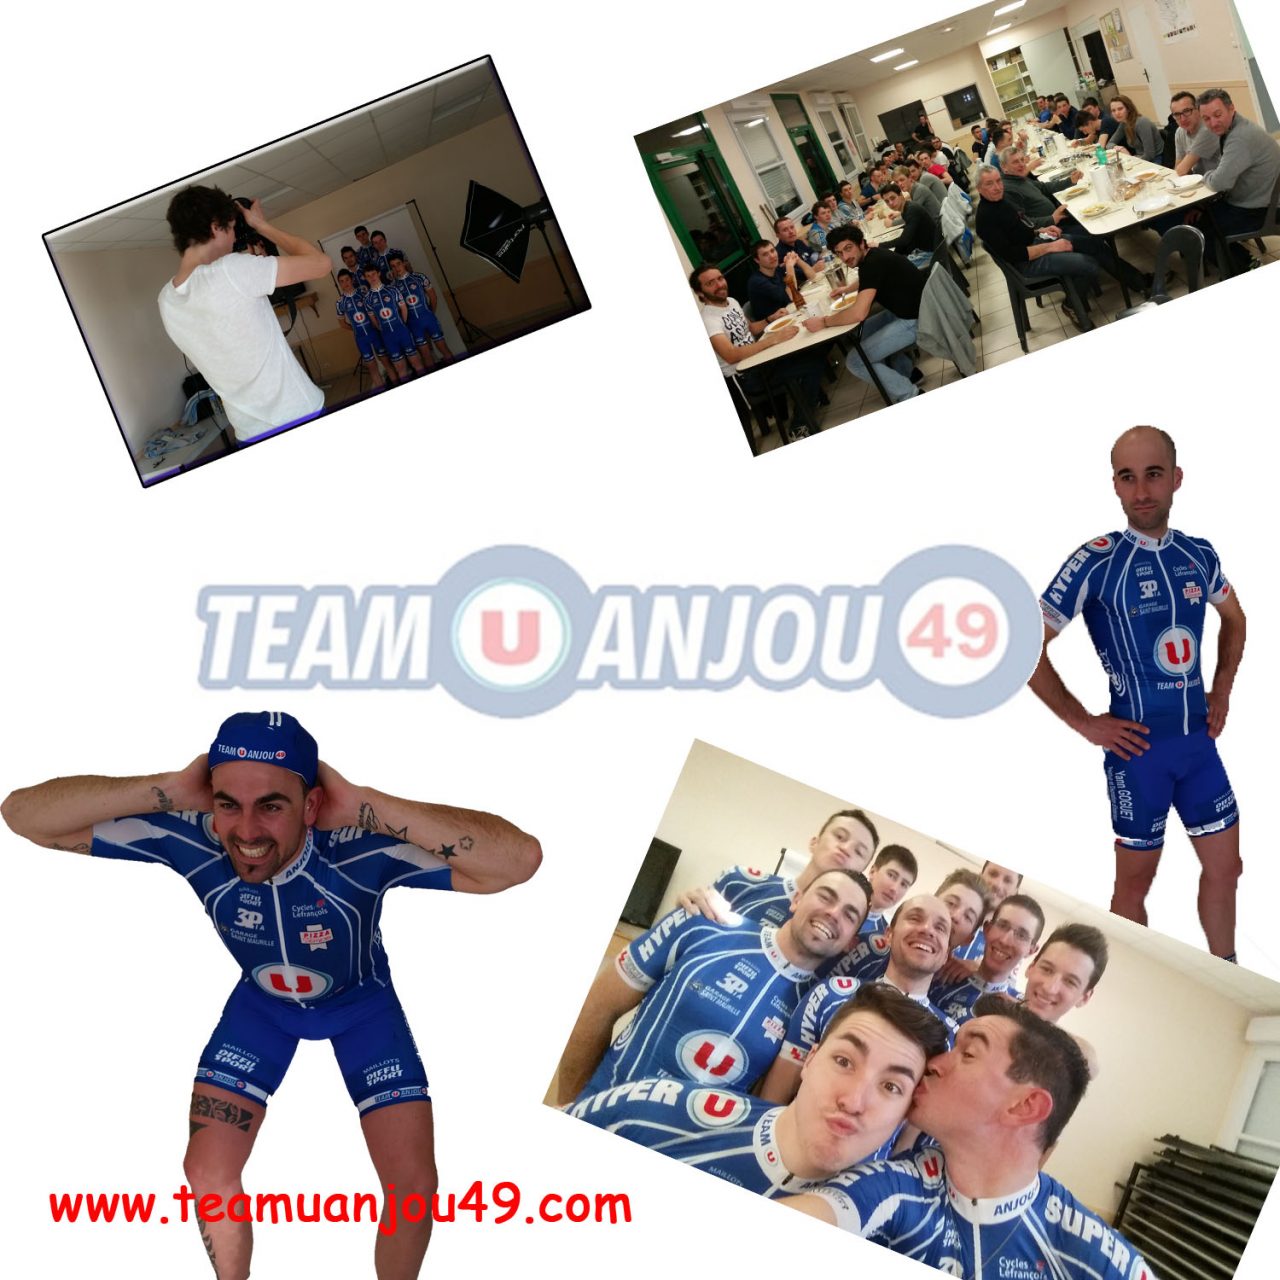 Le Team U Anjou 49 en stage